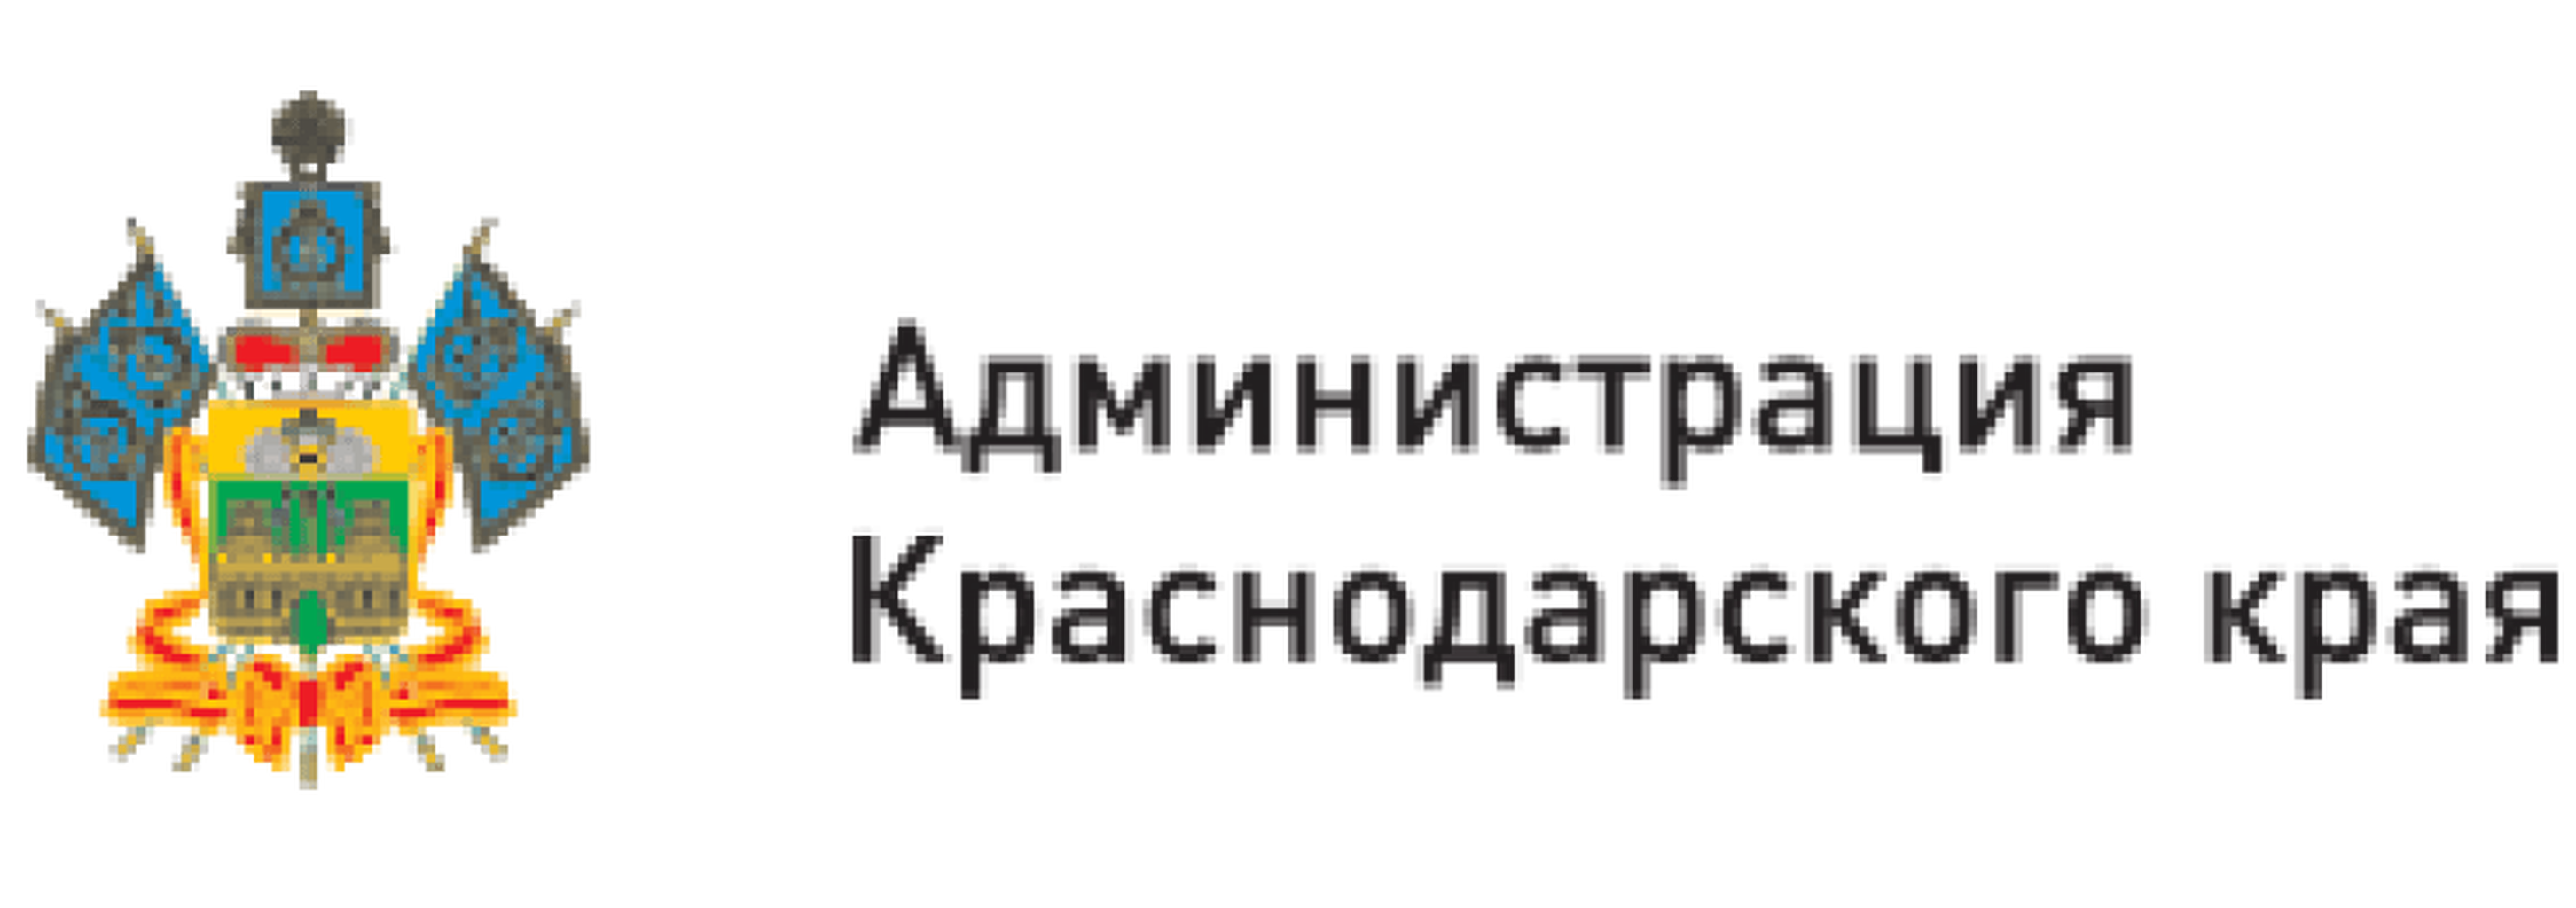 Администрация Краснодарского края лого. Правительство Краснодарского края логотип. Администрация Краснодарского края эмблема. Центр поддержки краснодарского края